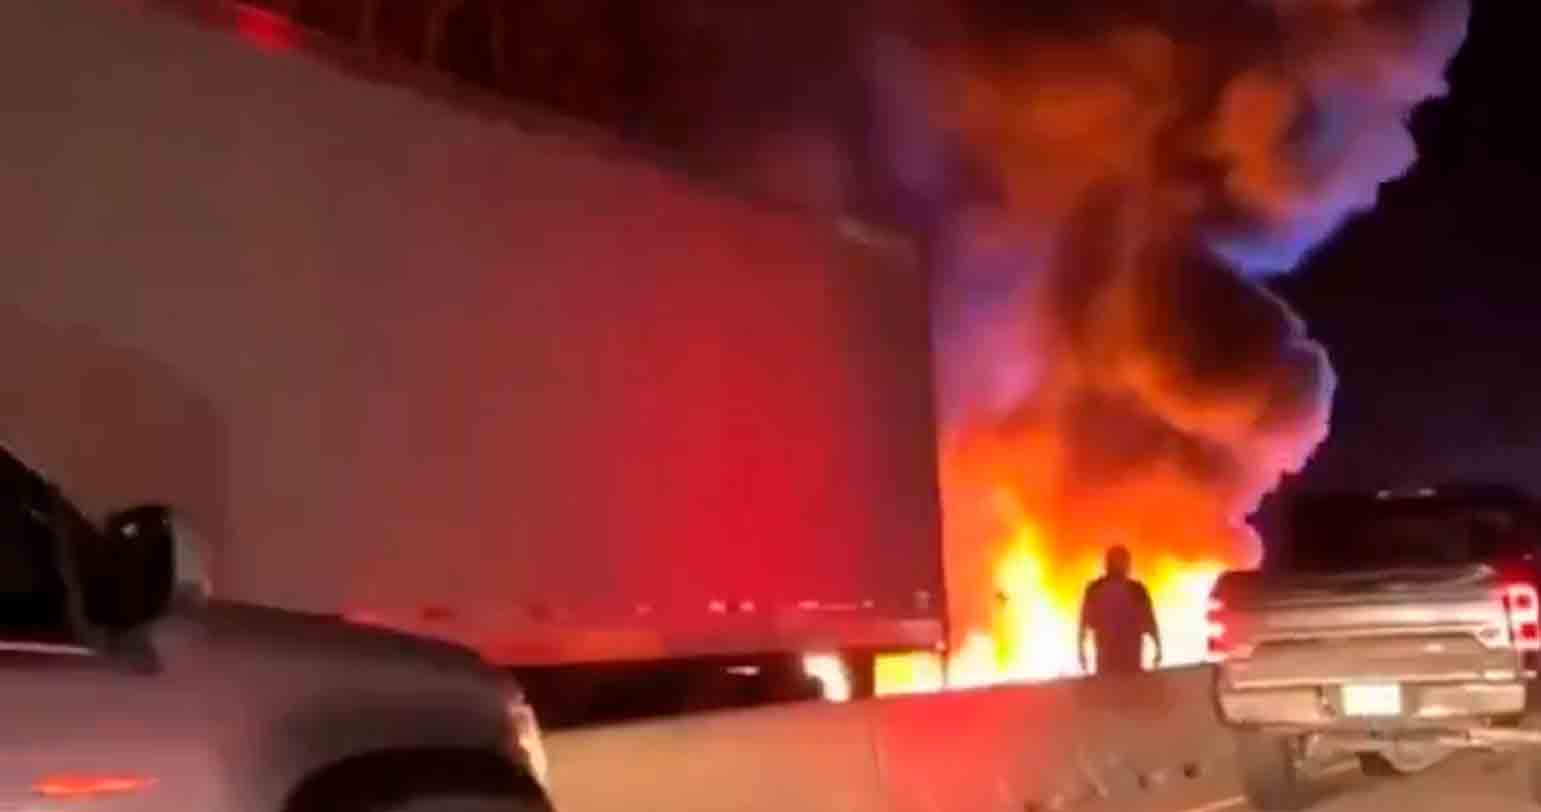 Vídeo: Avião cai e explode em rodovia na Carolina do Norte, 2 escapam com ferimentos graves. Vídeo e fotos: Reprodução Twitter @tworldreviews / @vanhoa2272 